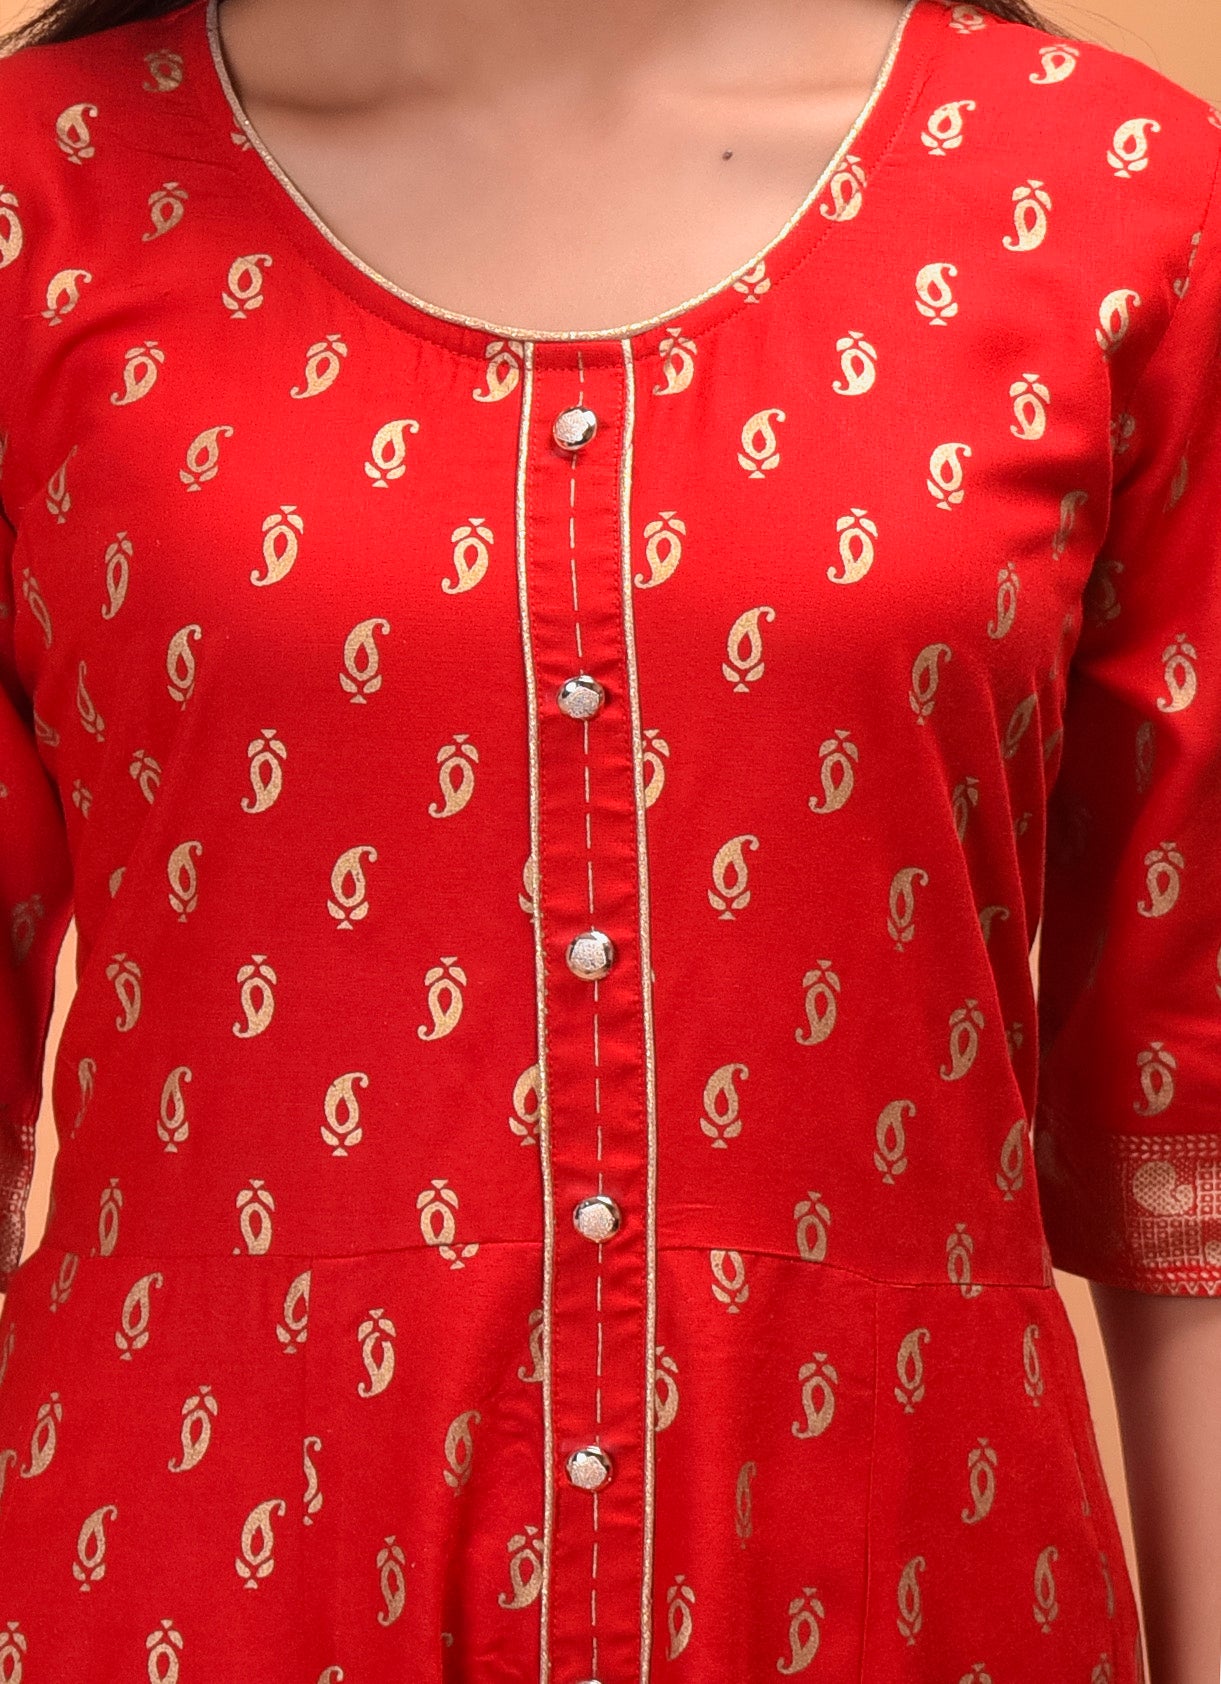 Cotton Designer Red Kurti at Rs 695 in Jaipur | ID: 2851285235555